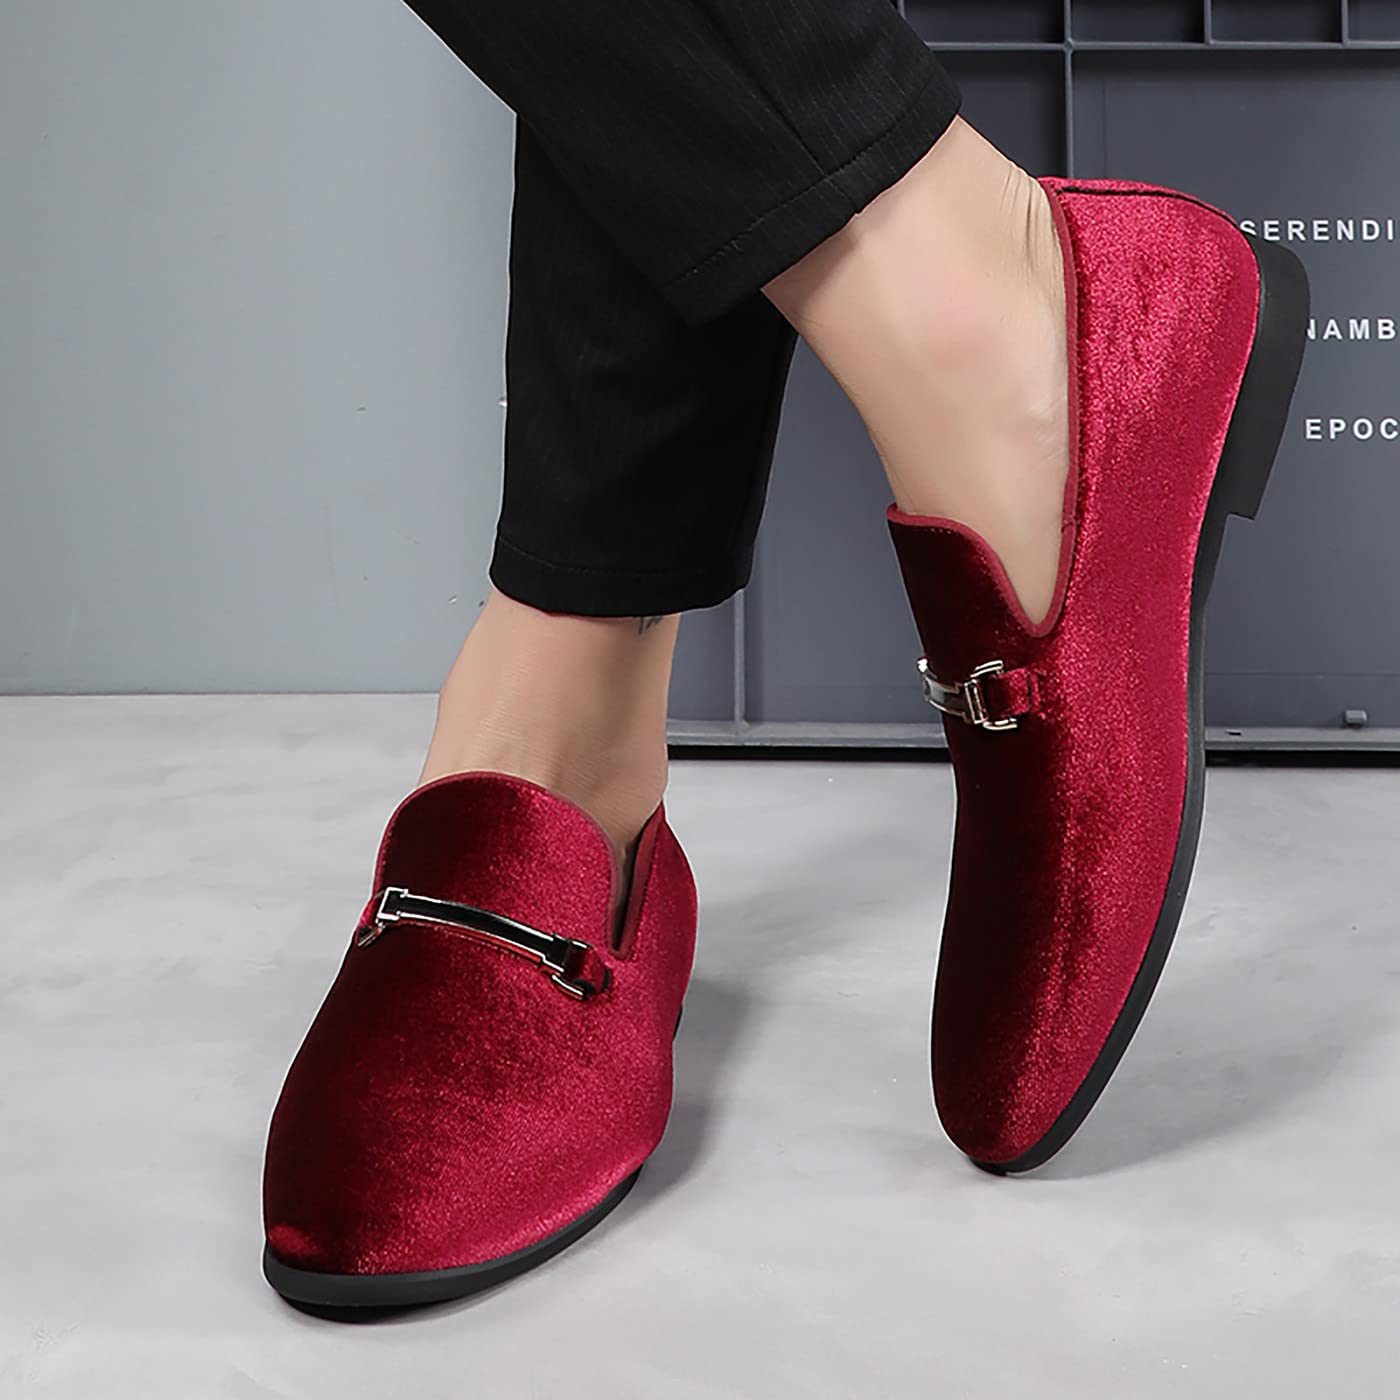 Santimon Dress Loafers Velvet Horsebit Buckle Flat Driving Moccasin Shoes for Men